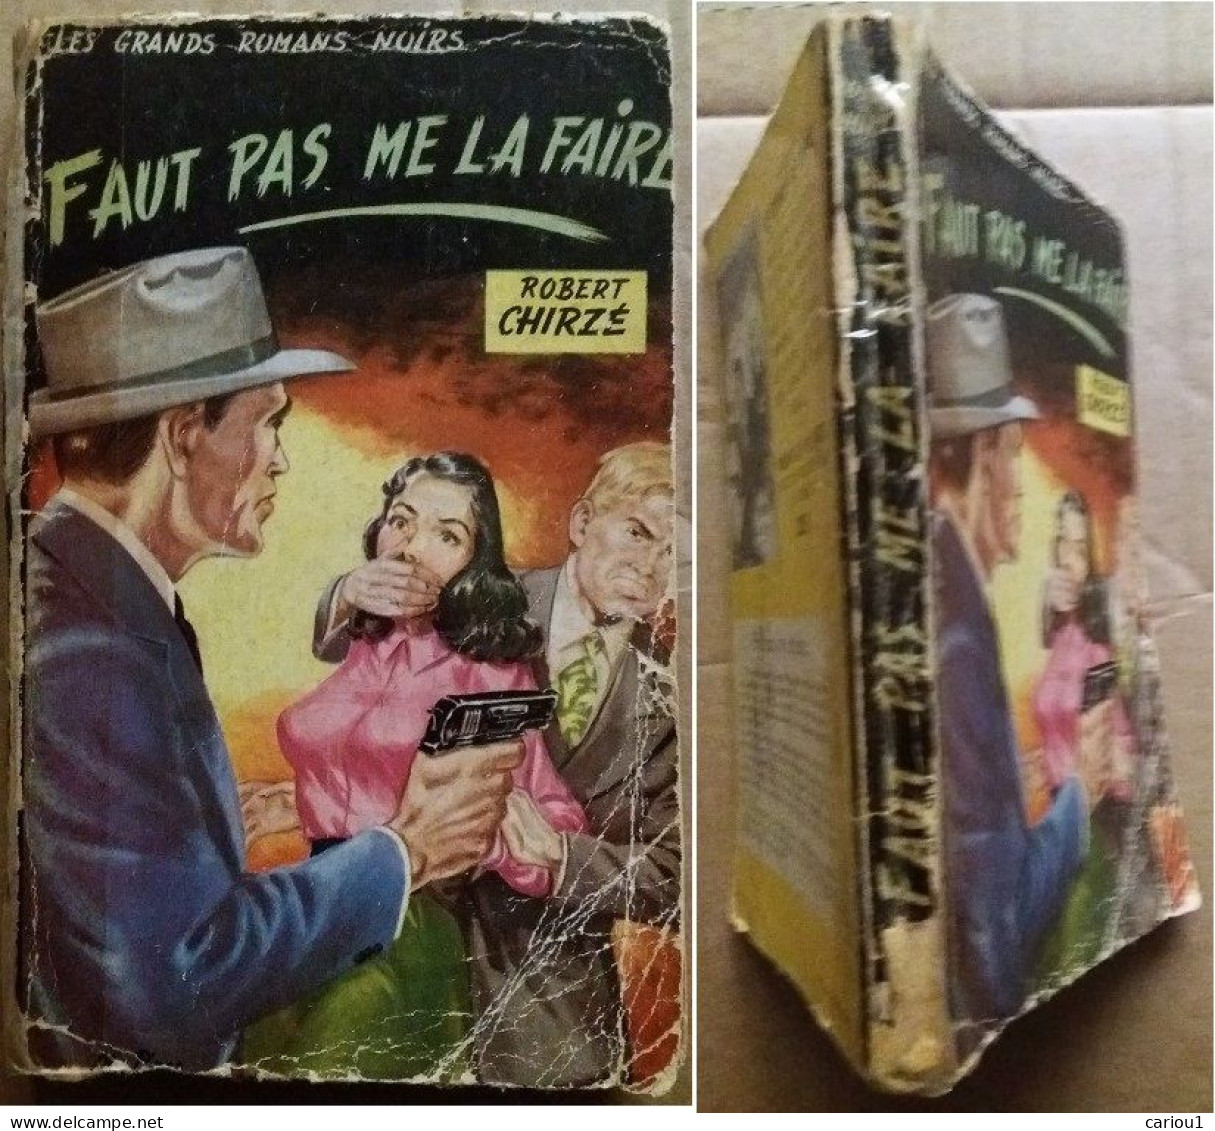 C1 CURIOSA Chirze FAUT PAS ME LA FAIRE Le Trotteur / Condor 1953 PINON Sexy Noir PORT INCLUS France - Trotteur